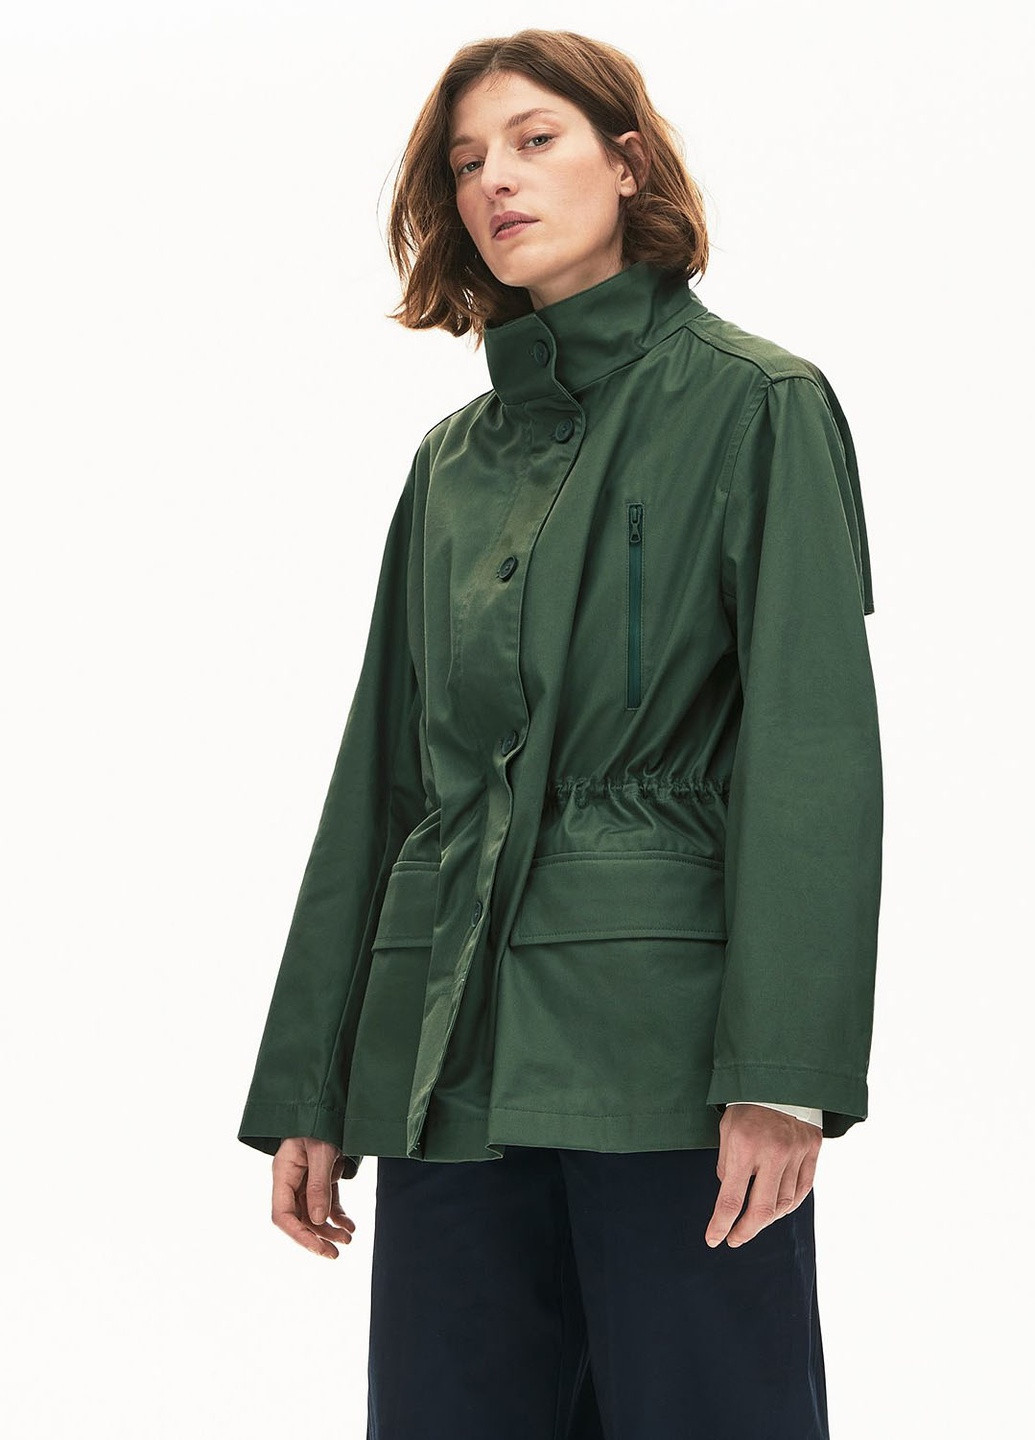 Зеленая куртка Lacoste